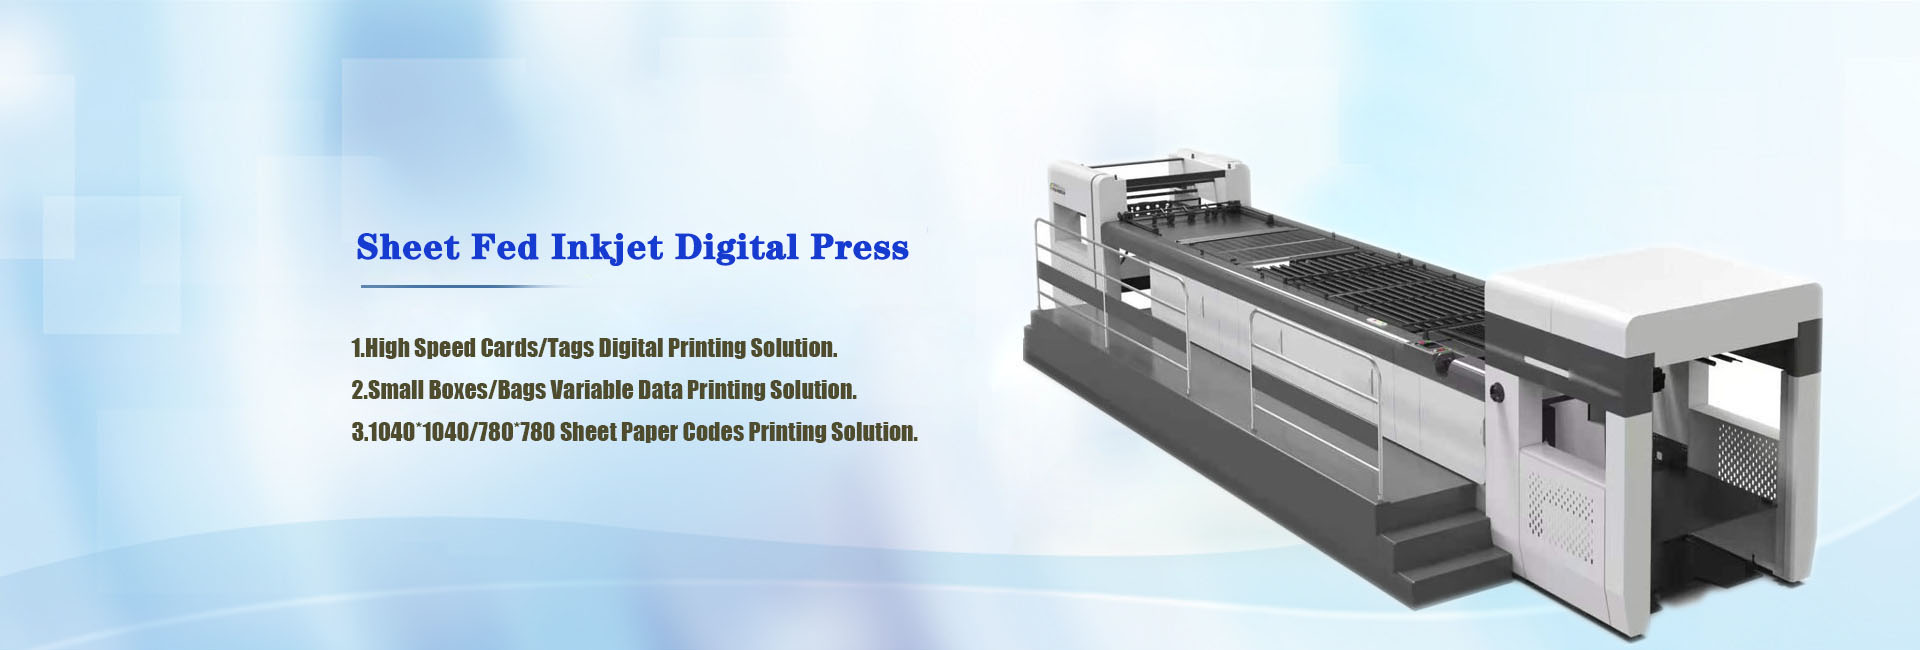 Sheet Fed Inkjet Digital Press